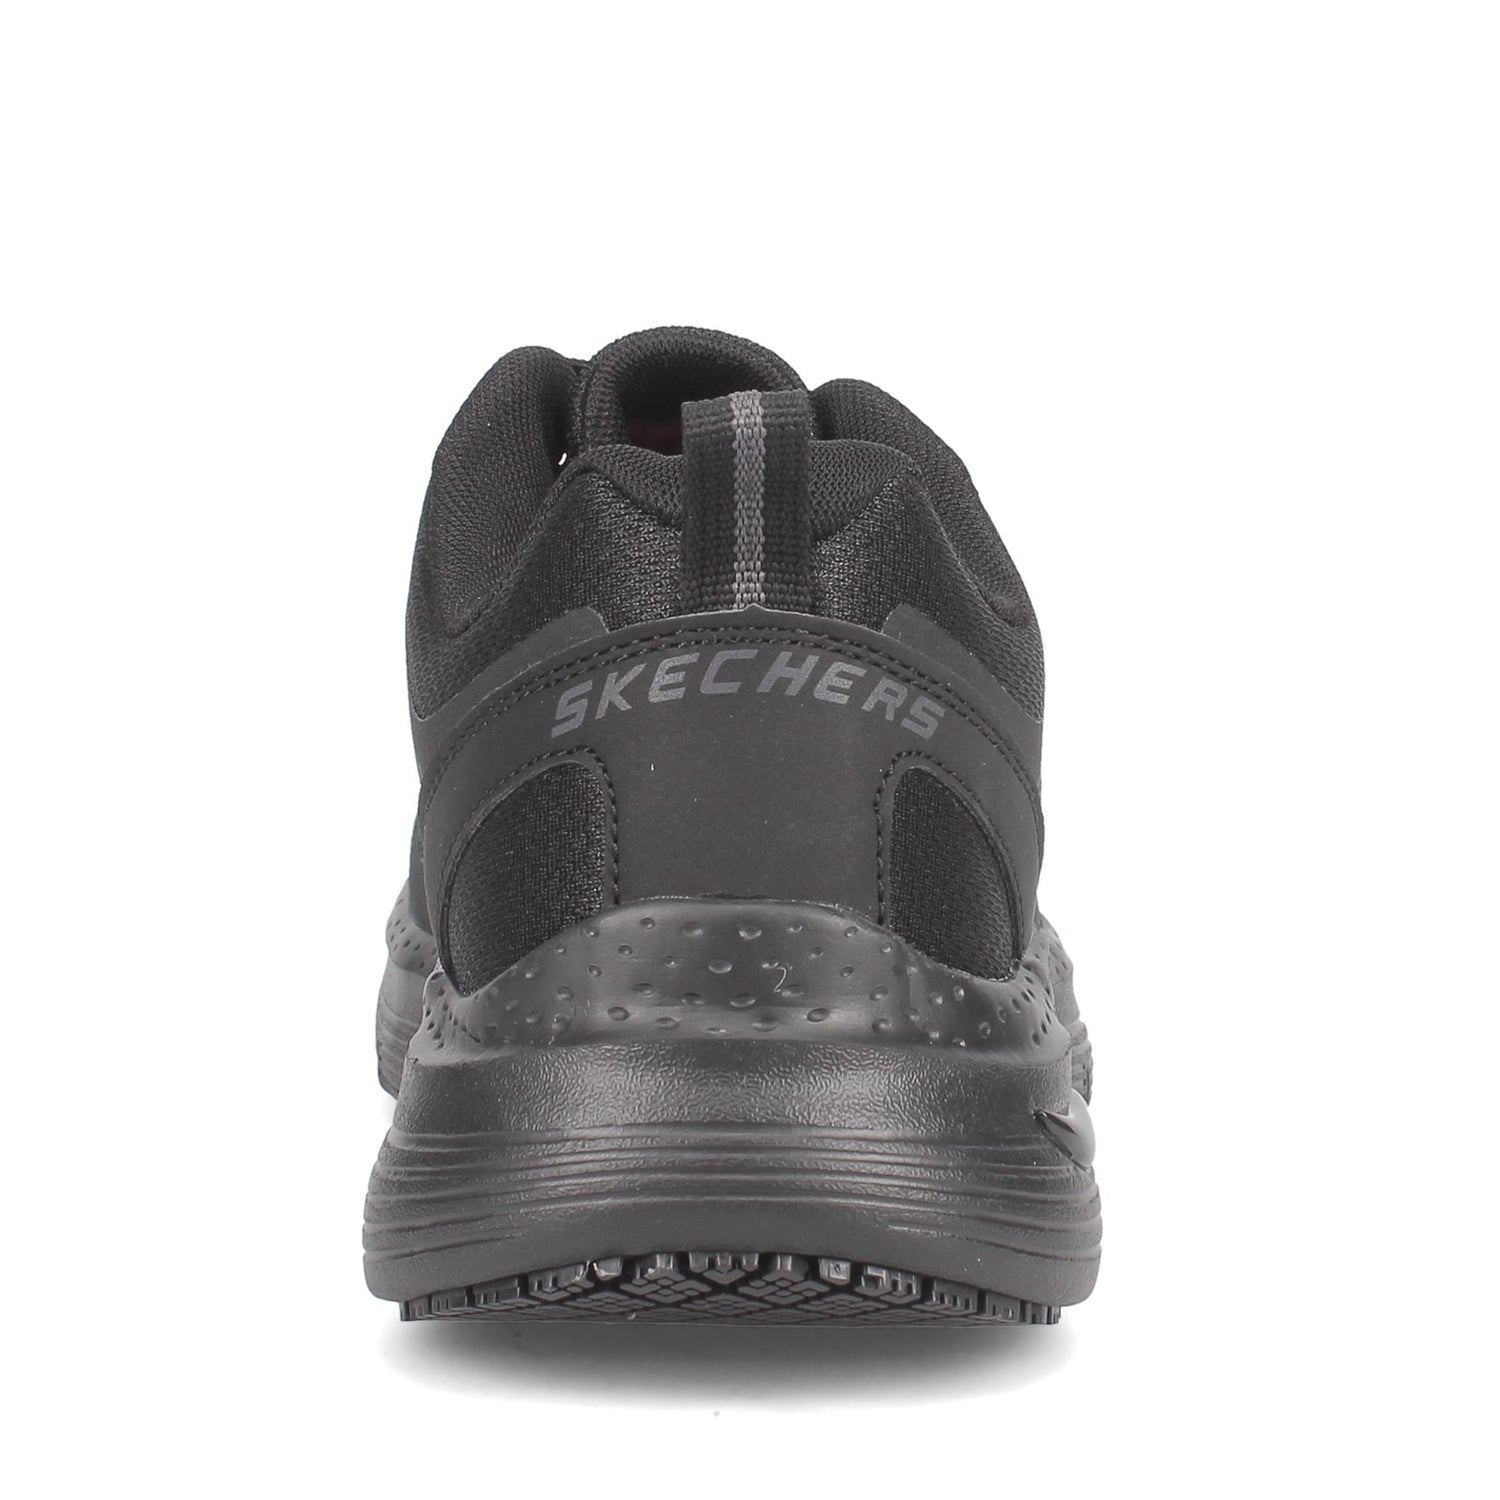 Peltz Shoes  Men's Skechers Arch Fit SR - Axtell Work Shoe Black 200025-BLK